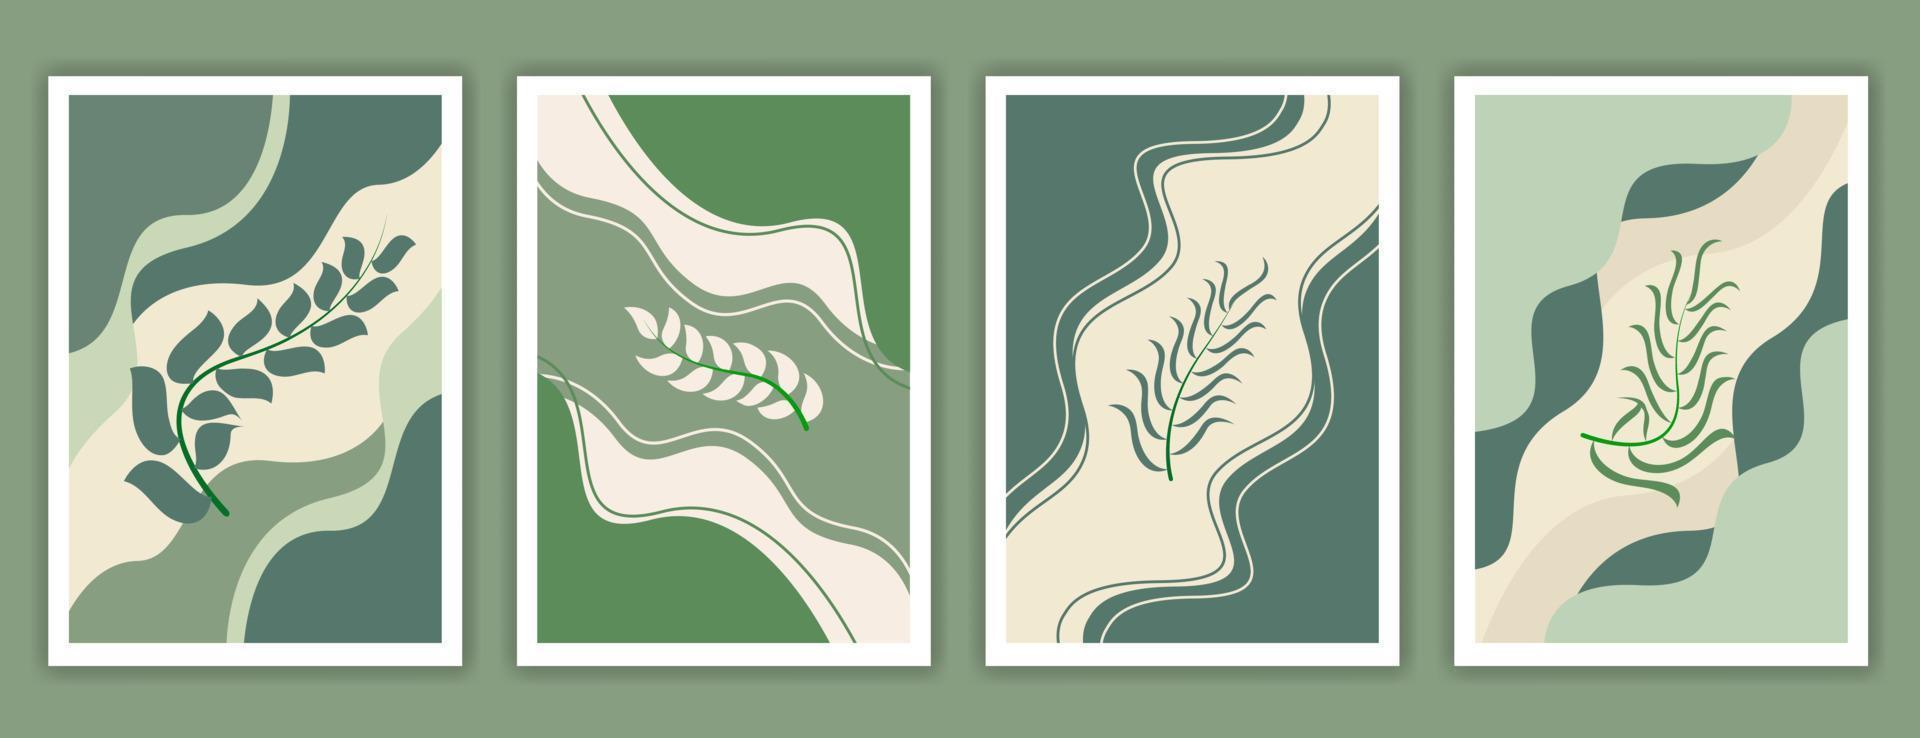 botanische Aquarell-Wand-Kunst-Vektor-Set. Erdton Hintergrund Laub Strichzeichnungen mit abstrakter Form. abstraktes Pflanzenkunstdesign für gerahmte Wanddrucke, Leinwanddrucke, Poster, Wohnkultur. vektor